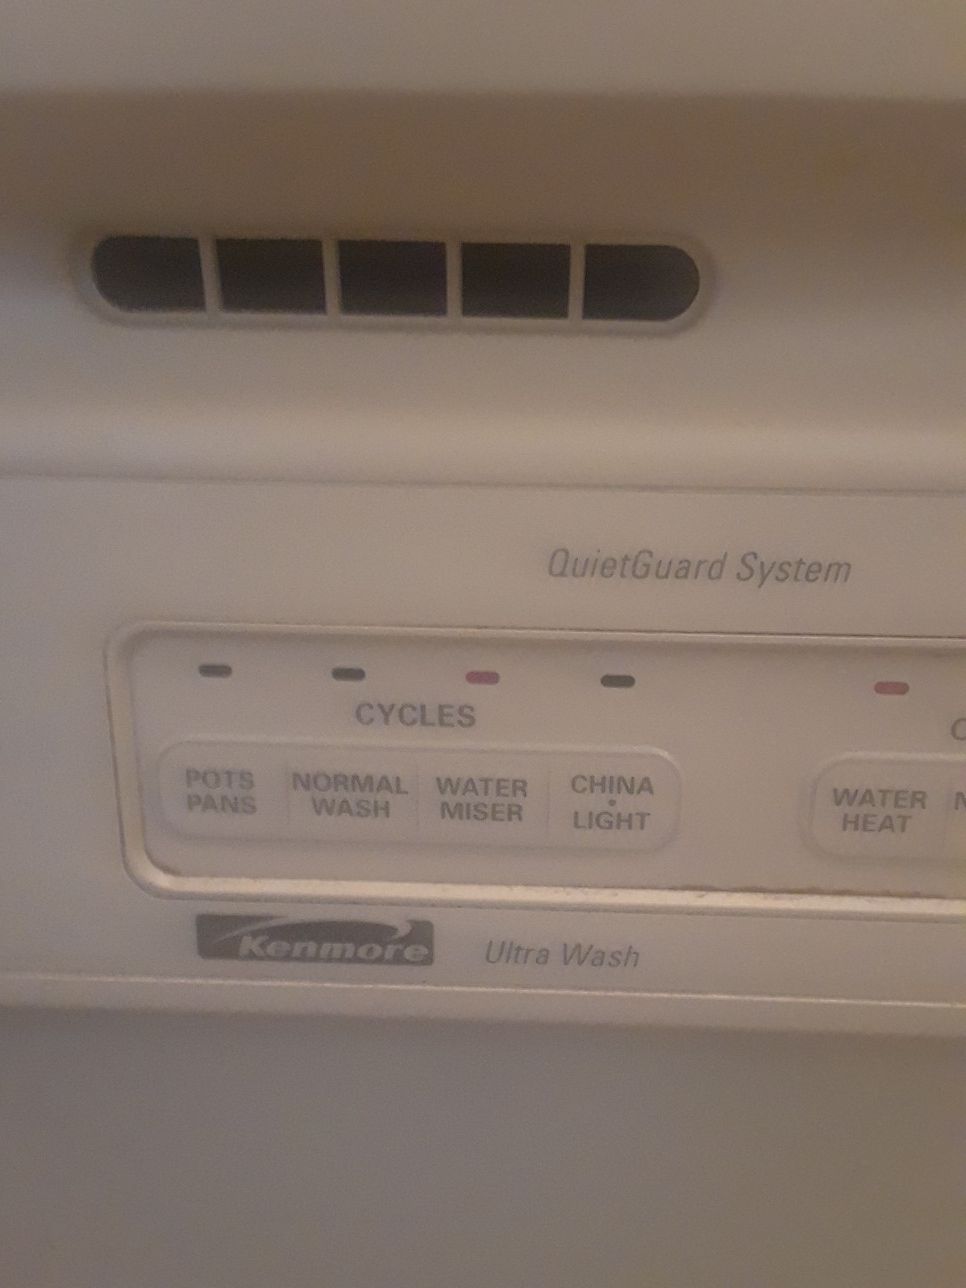 Kenmore Ultra Plus dishwasher